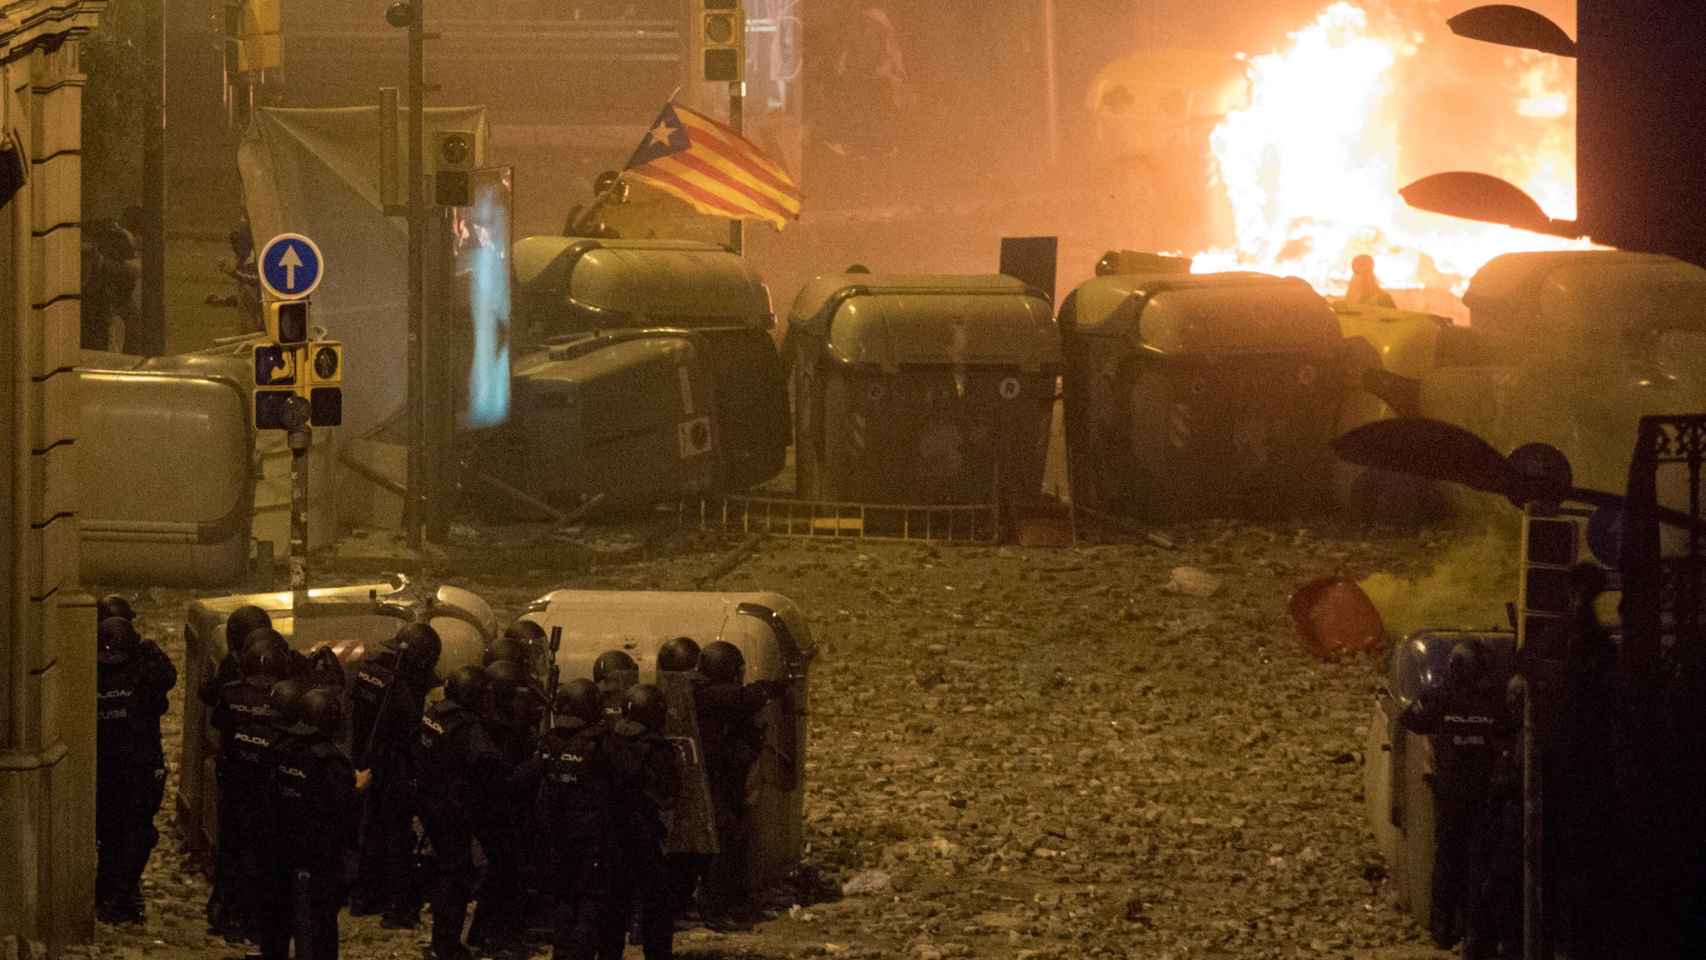 Los hechos tuvieron lugar durante los disturbios que se vivieron en Cataluña tras la sentencia del 'procés'; en la imagen, una escena que se vivió en Barcelona.